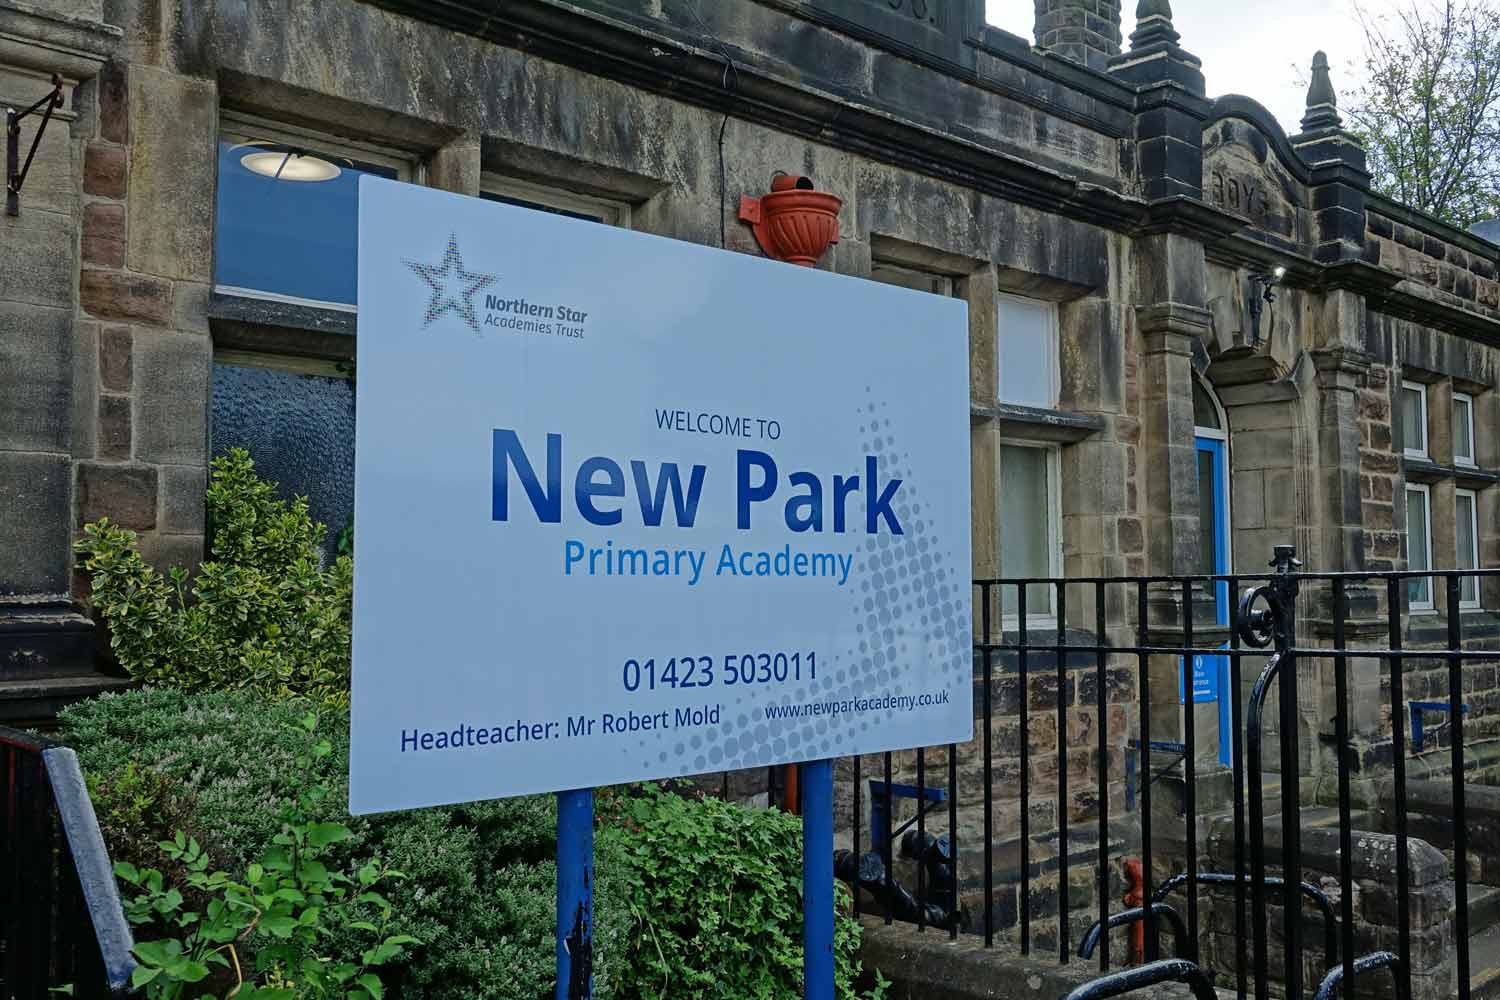 New Park School in Harrogate